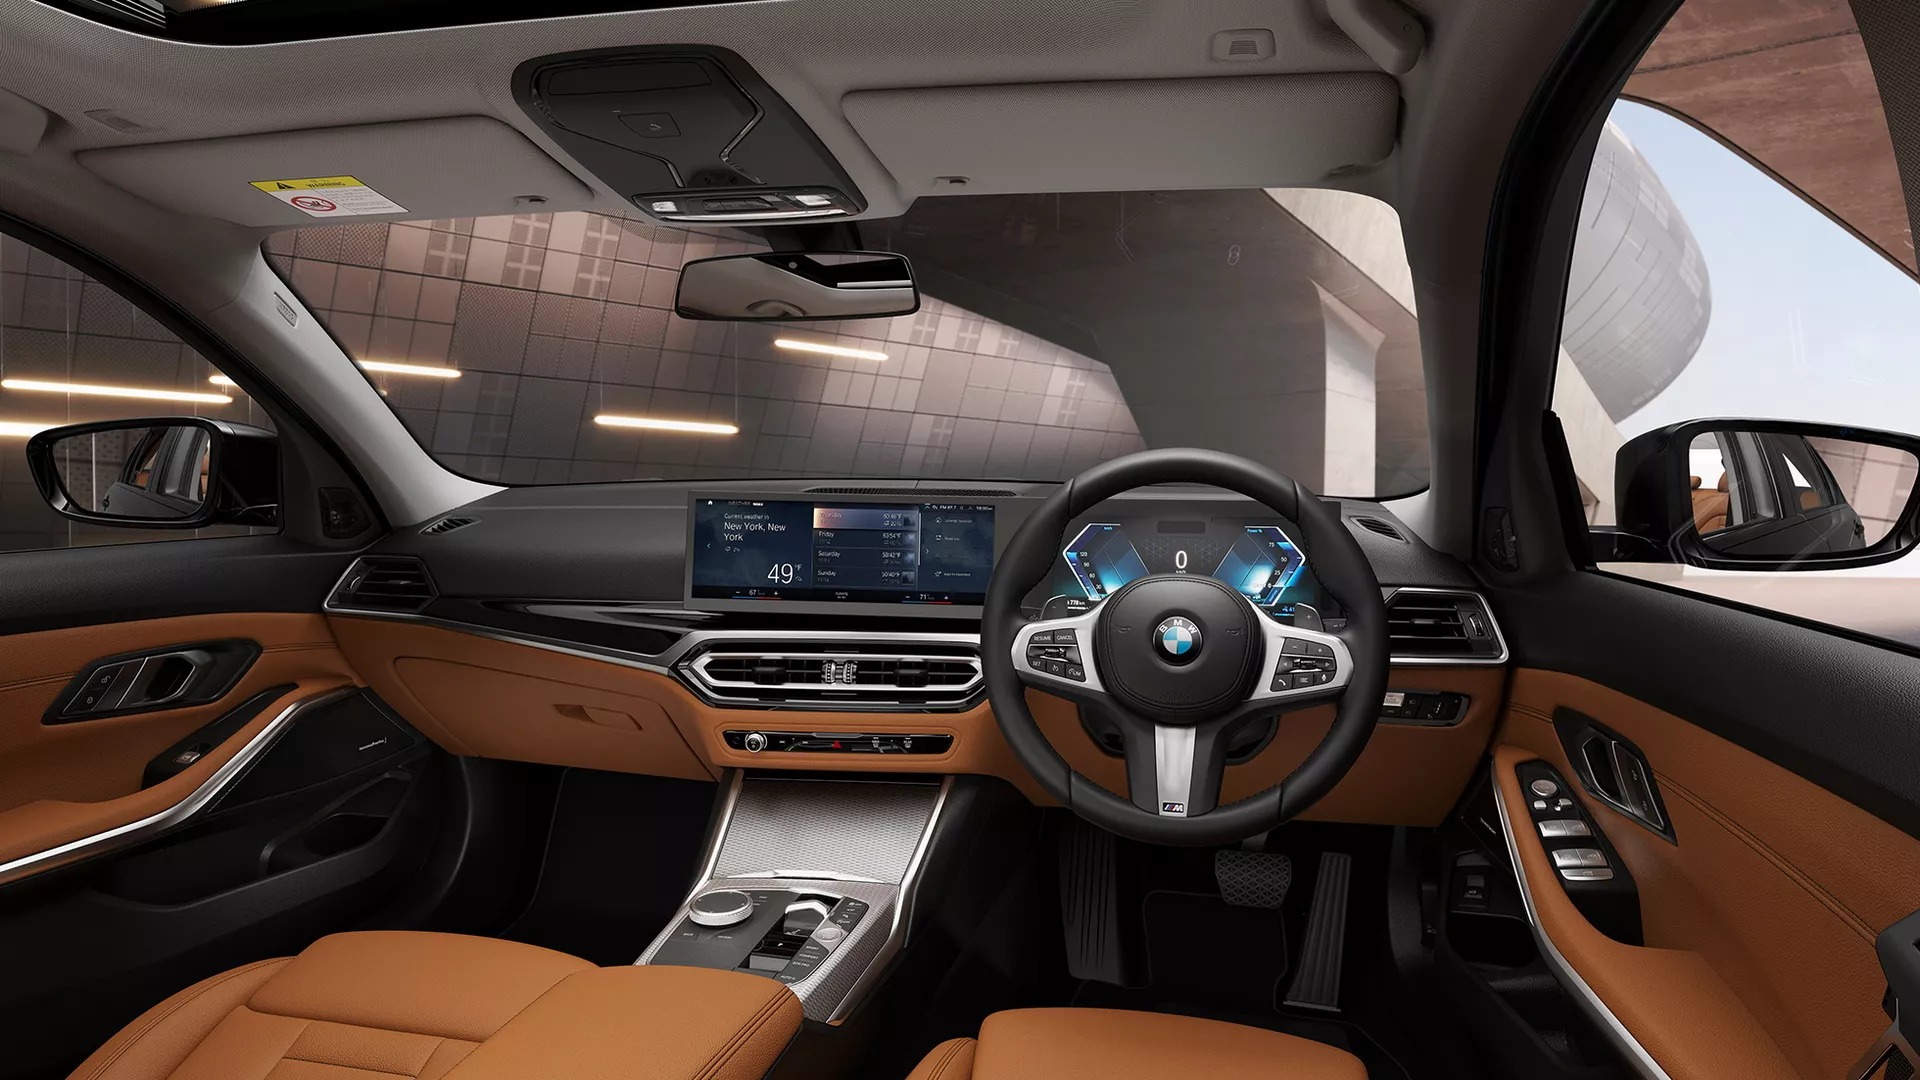 Ra mắt BMW 3-Series kéo dài: Nhìn mắt thường khó tìm ra sự khác biệt - Ảnh 8.